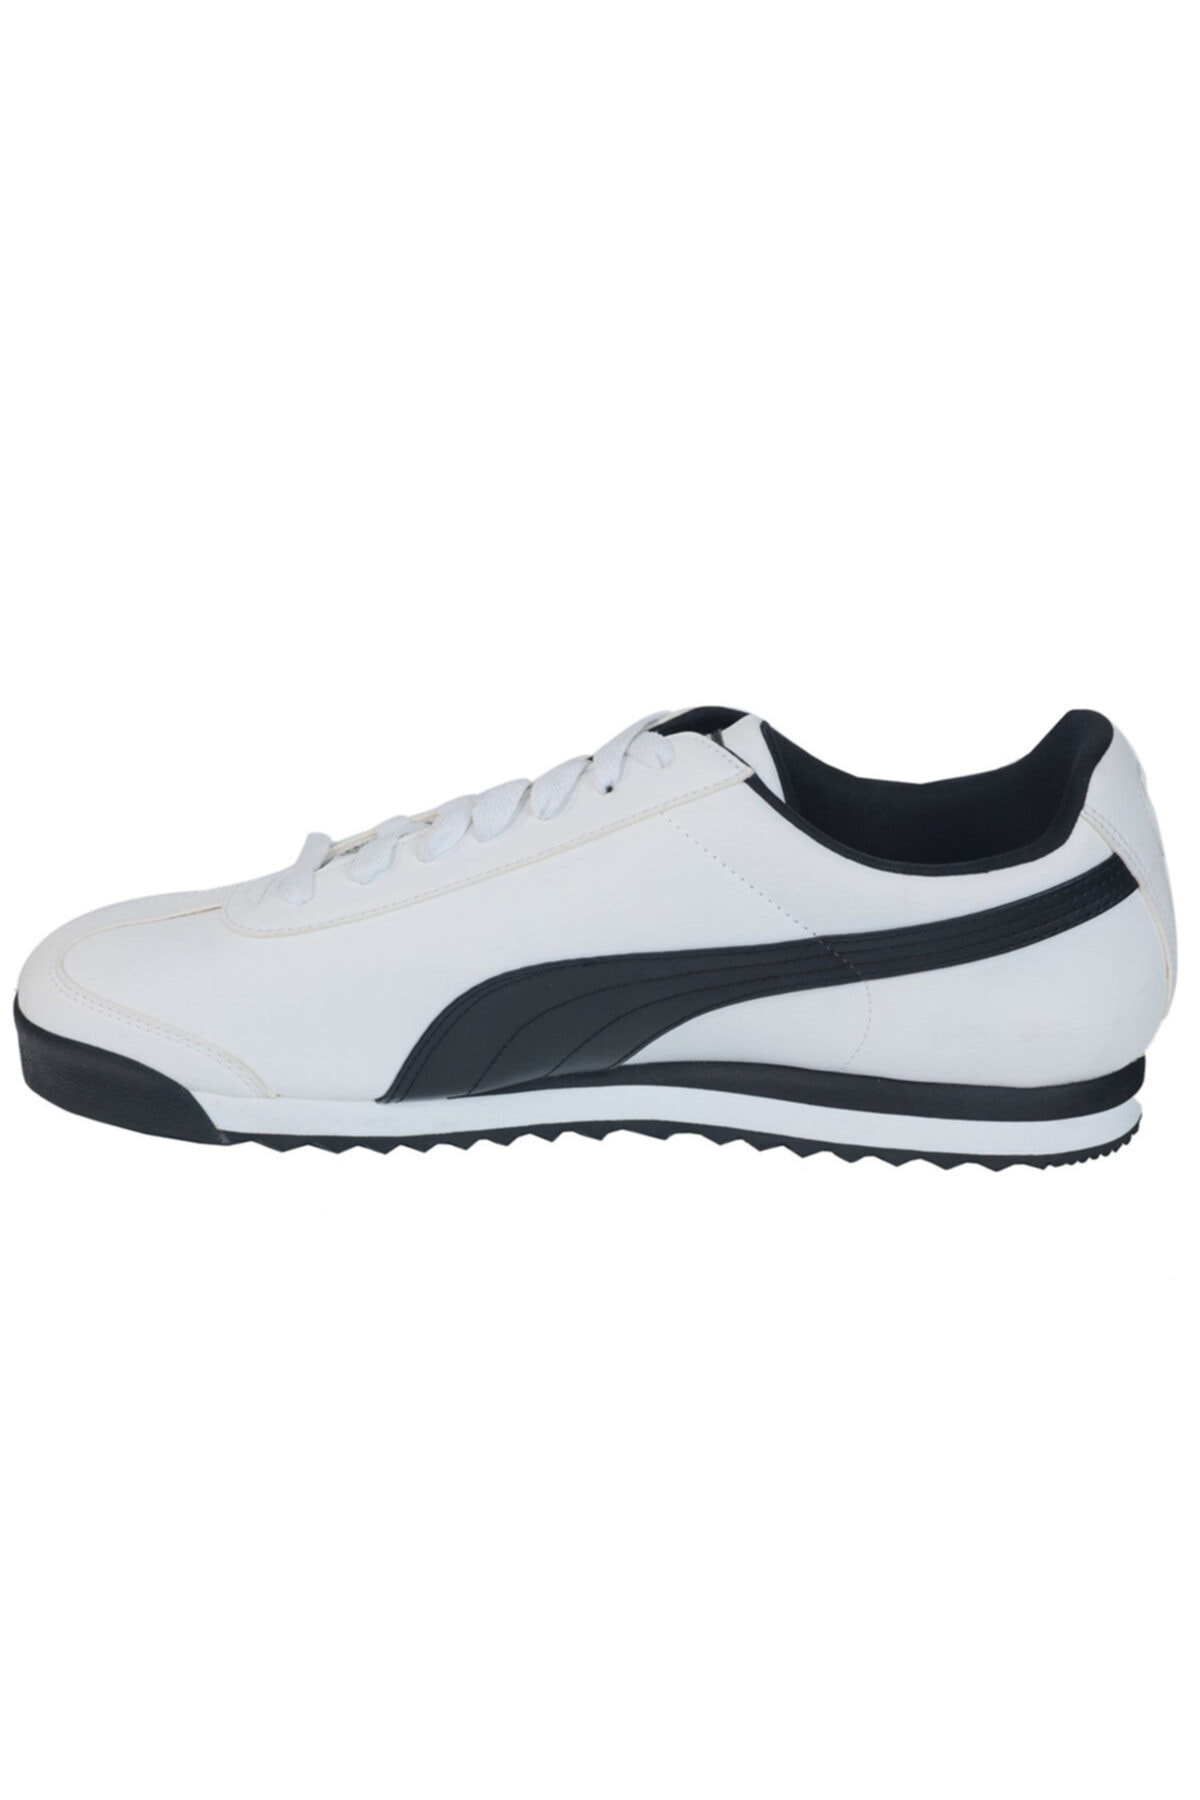 balık tablo ozan  Puma Roma Basic Erkek Günlük Ayakkabı 35357204 Beyaz Fiyatı, Yorumları -  Trendyol